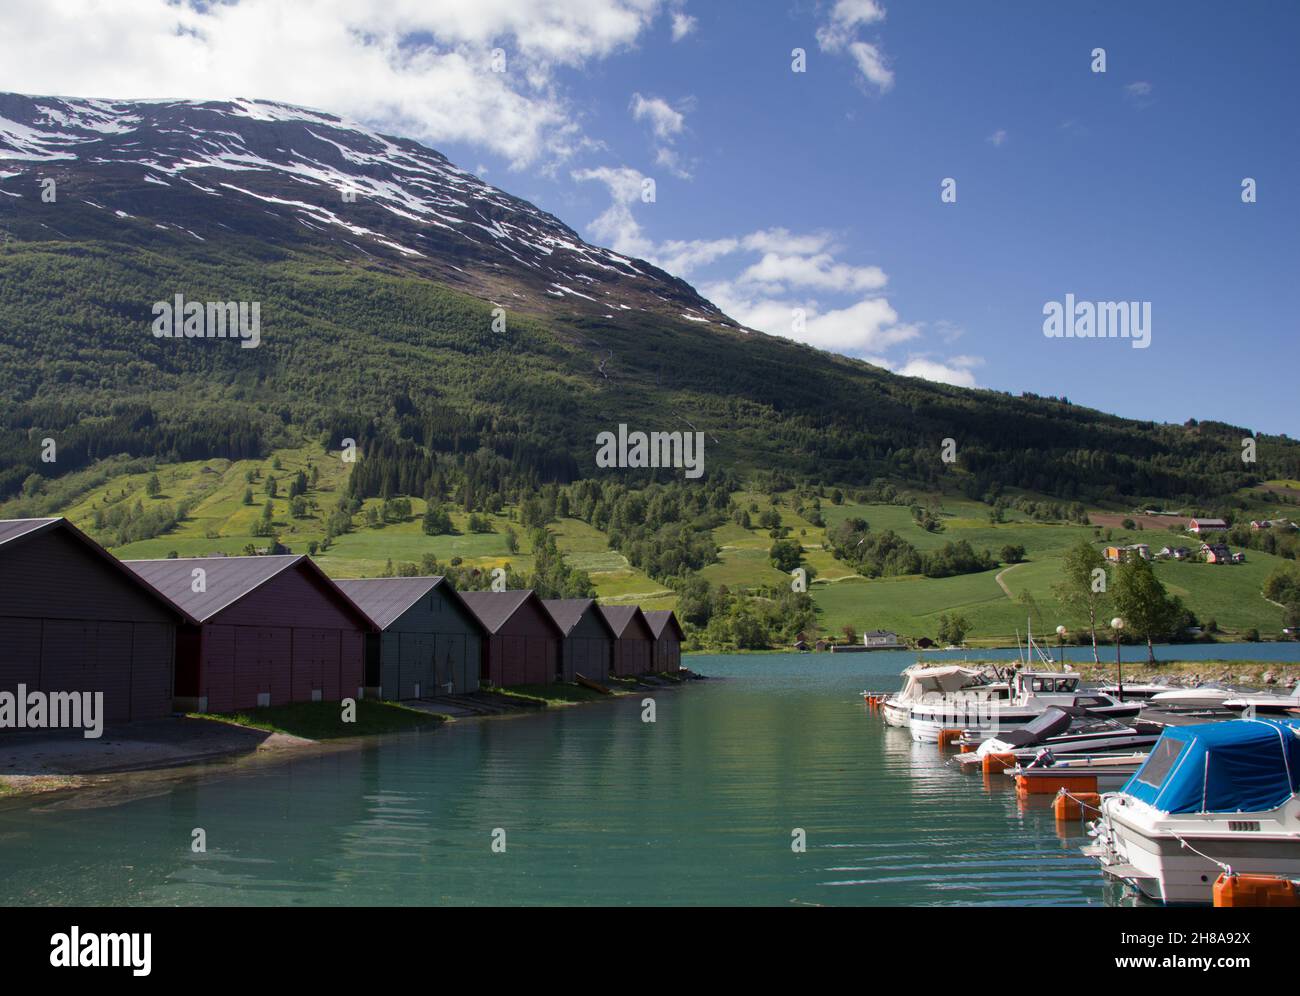 Petite marina au village d'Olden, Norvège.Comté de Sogn og Fjordane.Comté de Sogn og Fjordane. Banque D'Images